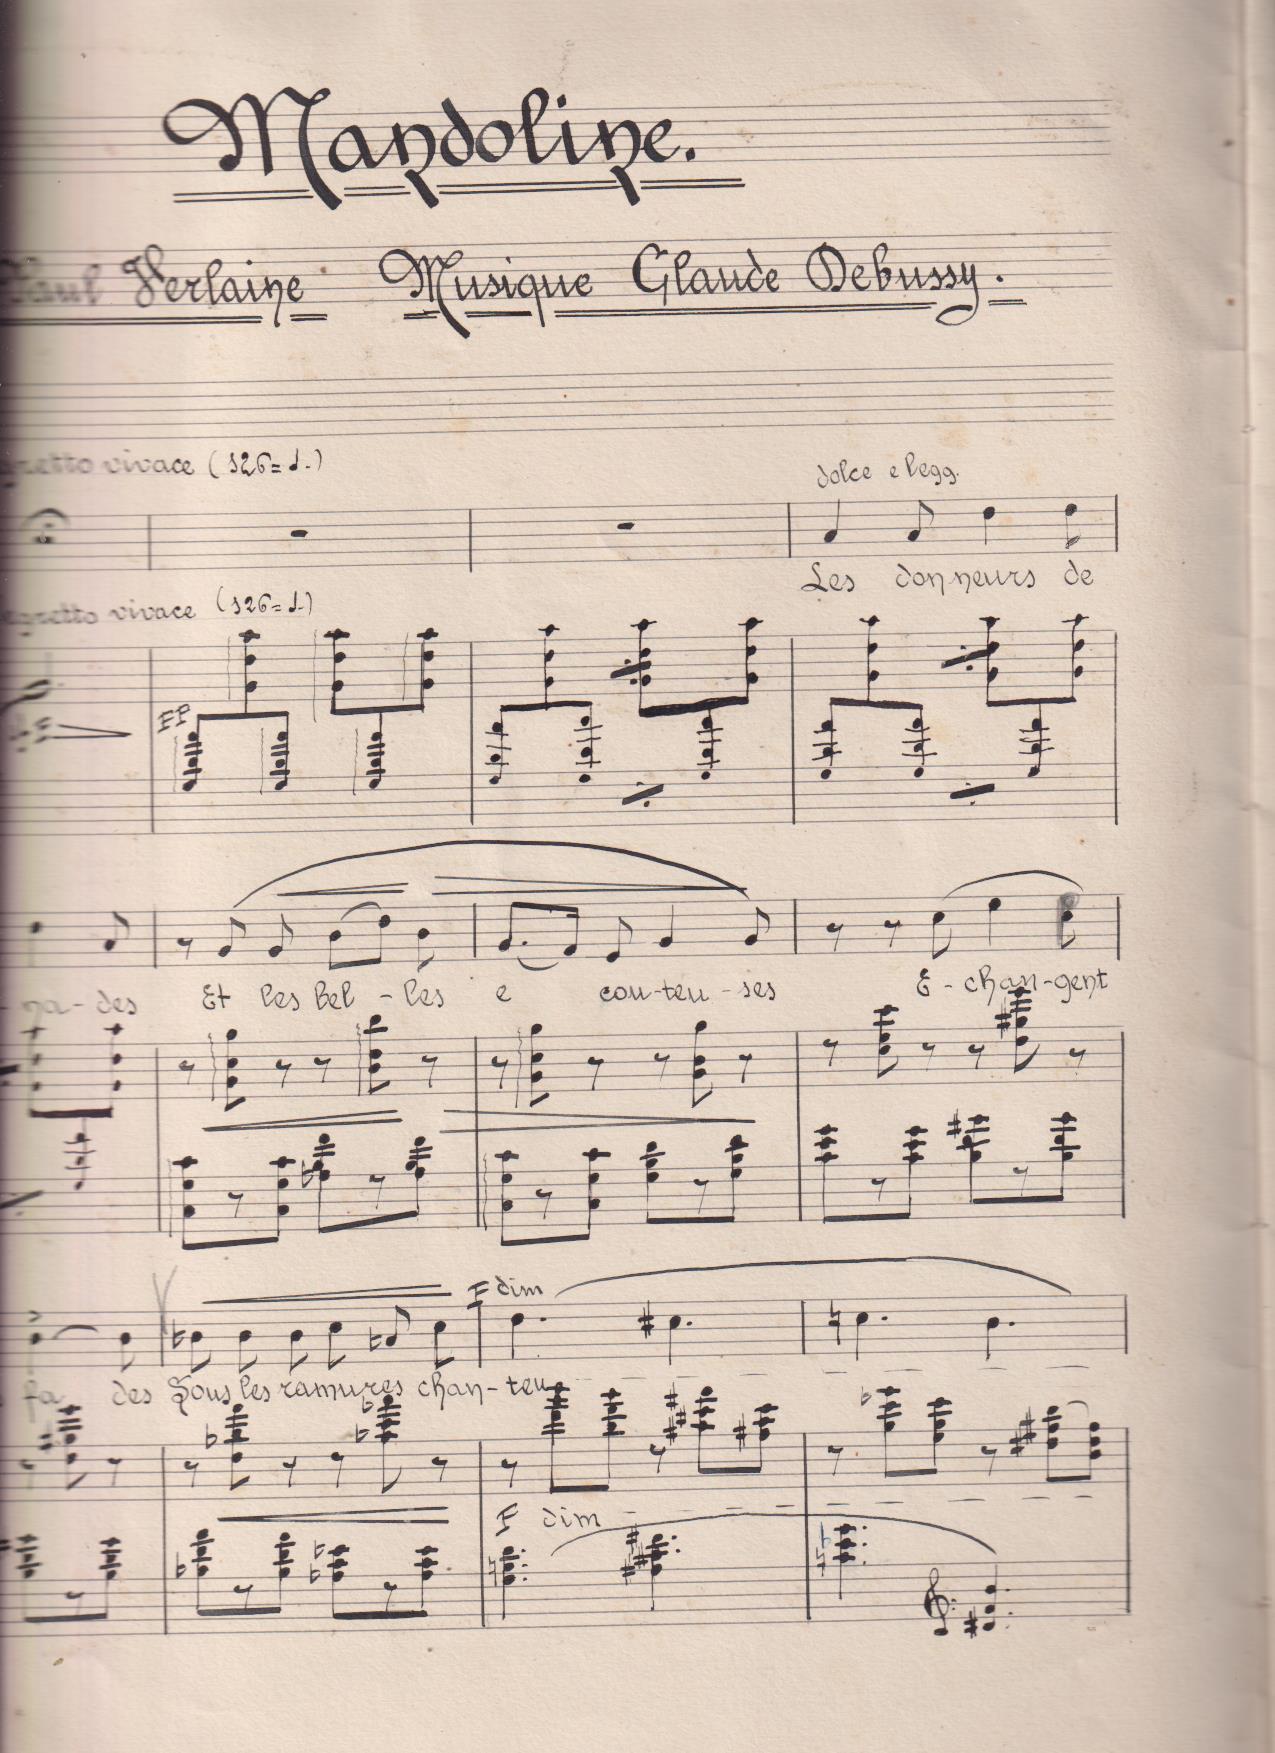 Mandoline. Poesie Paul Verlaine, Musique de G. Debussy. Manuscrita (31x27) 5 páginas